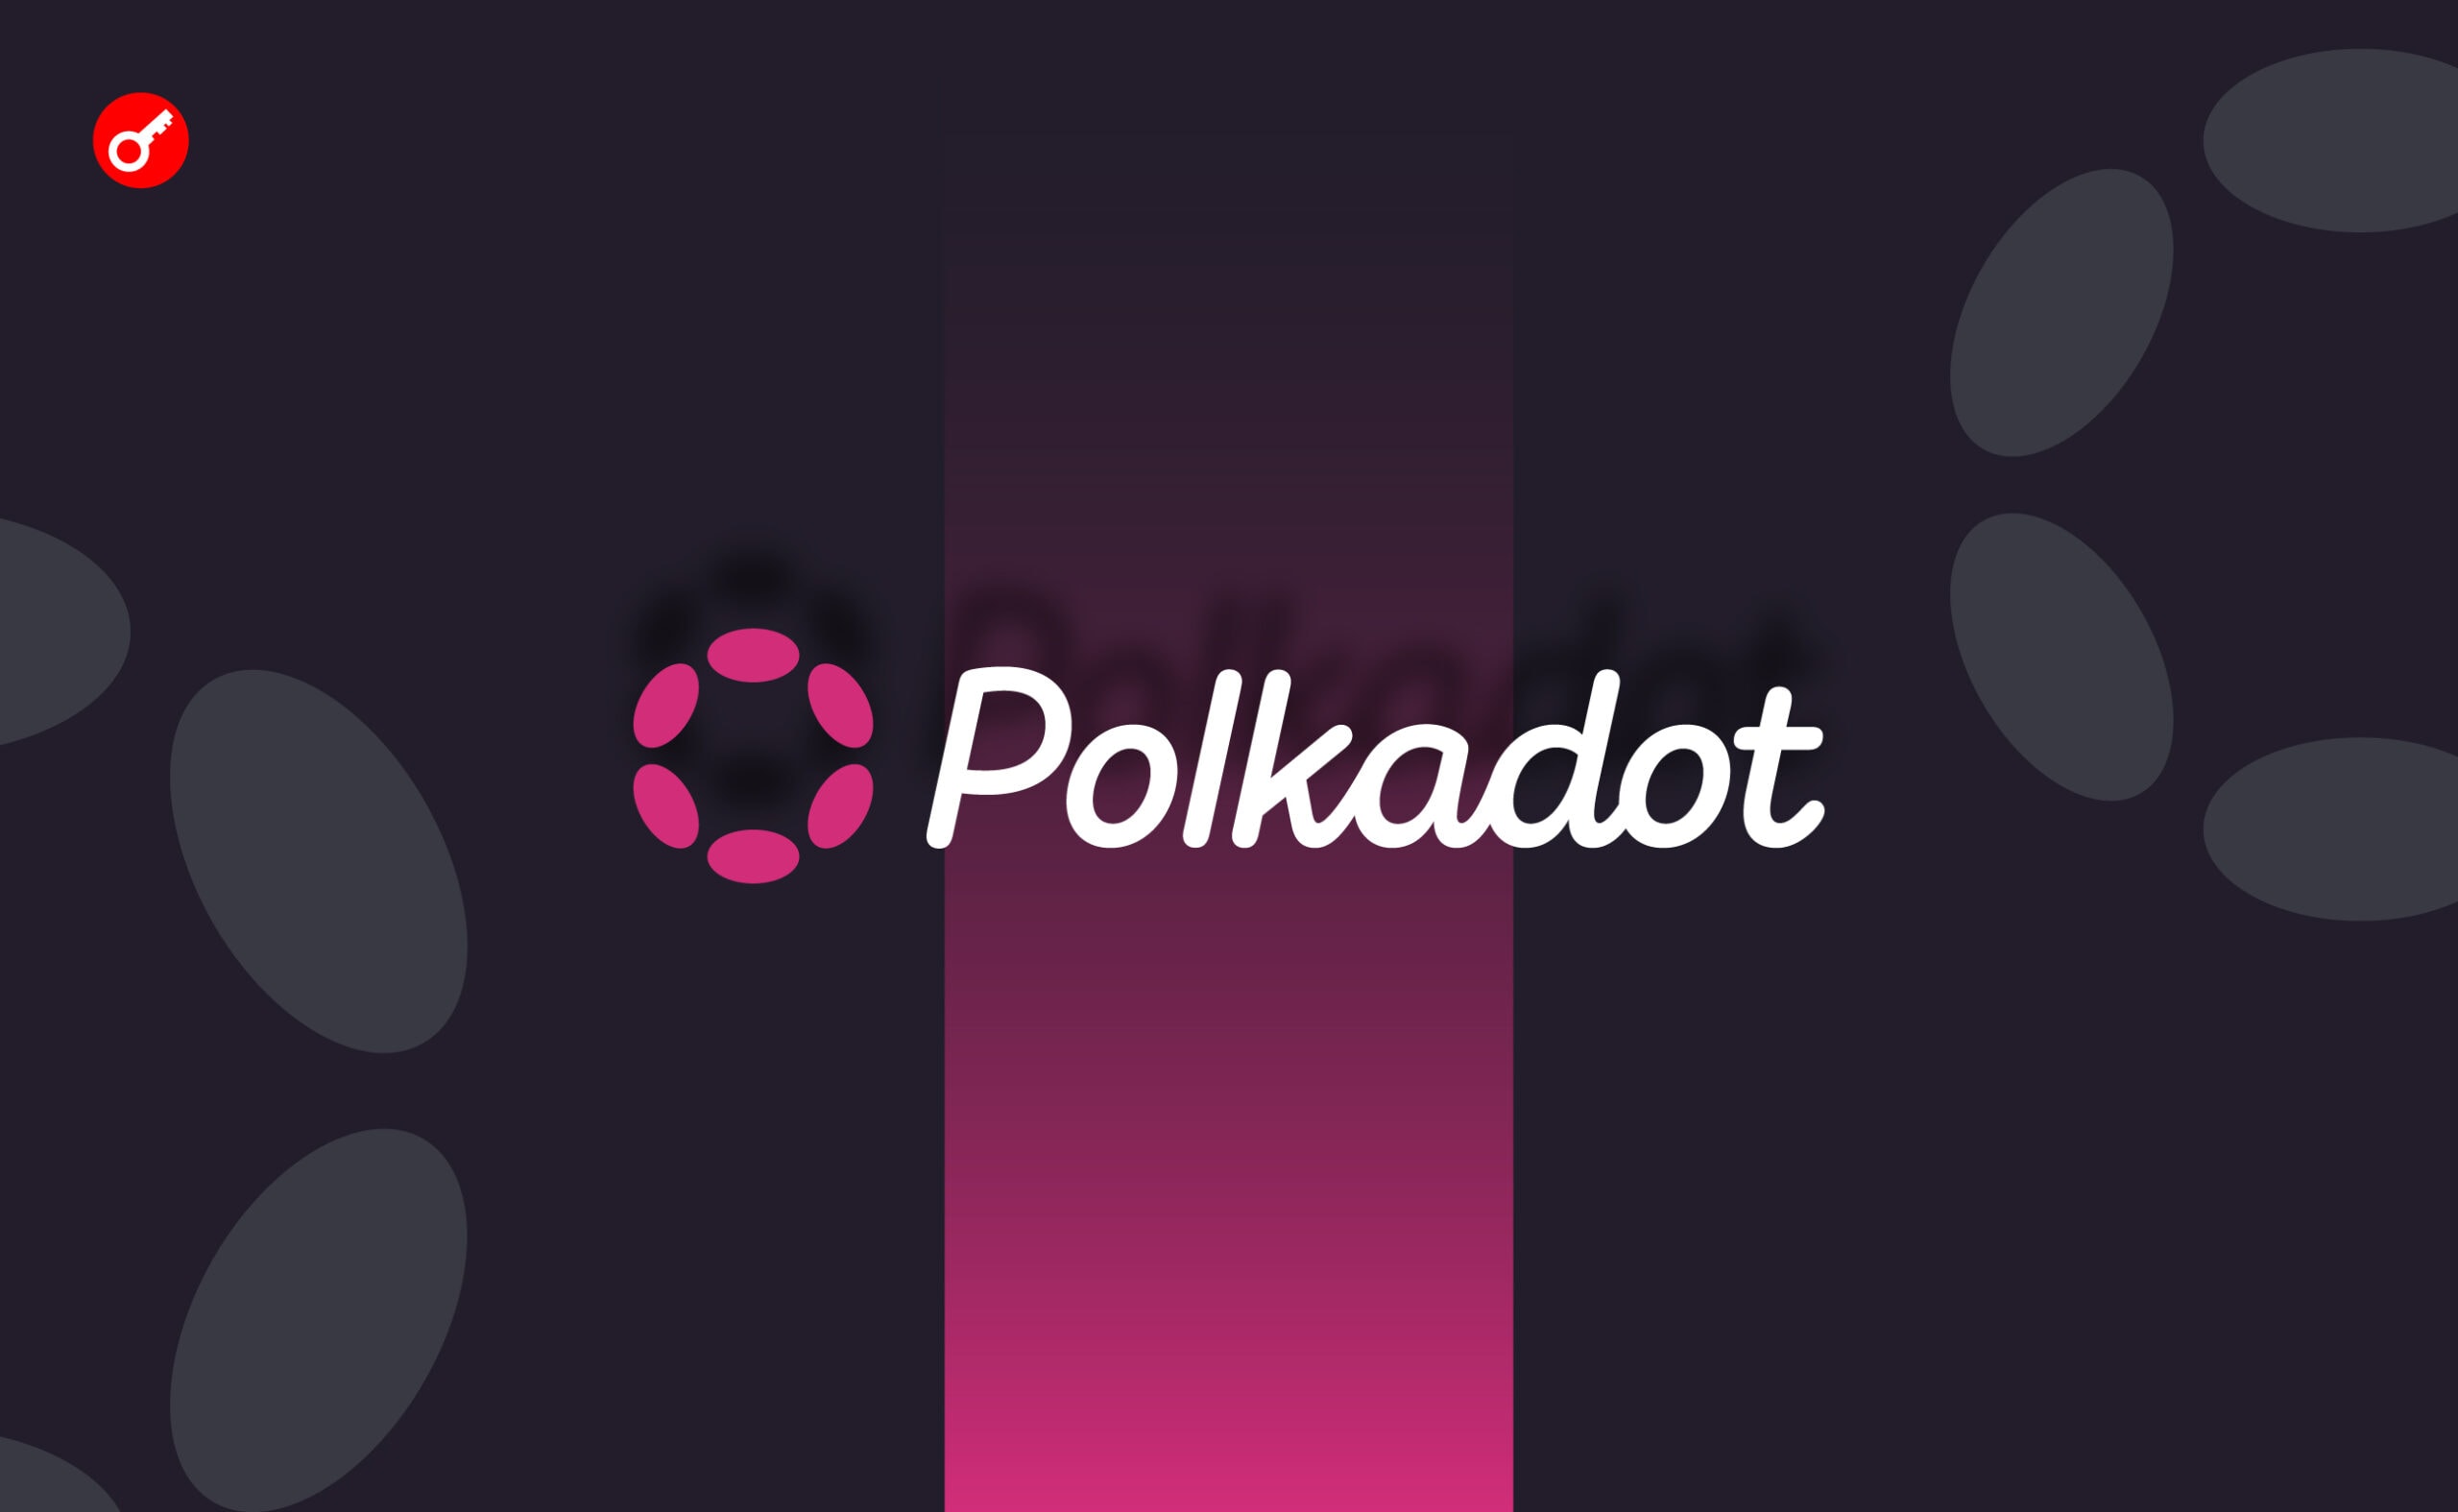 Polkadot оголосила про інтеграцію з Unity Asset Store. Головний колаж новини.